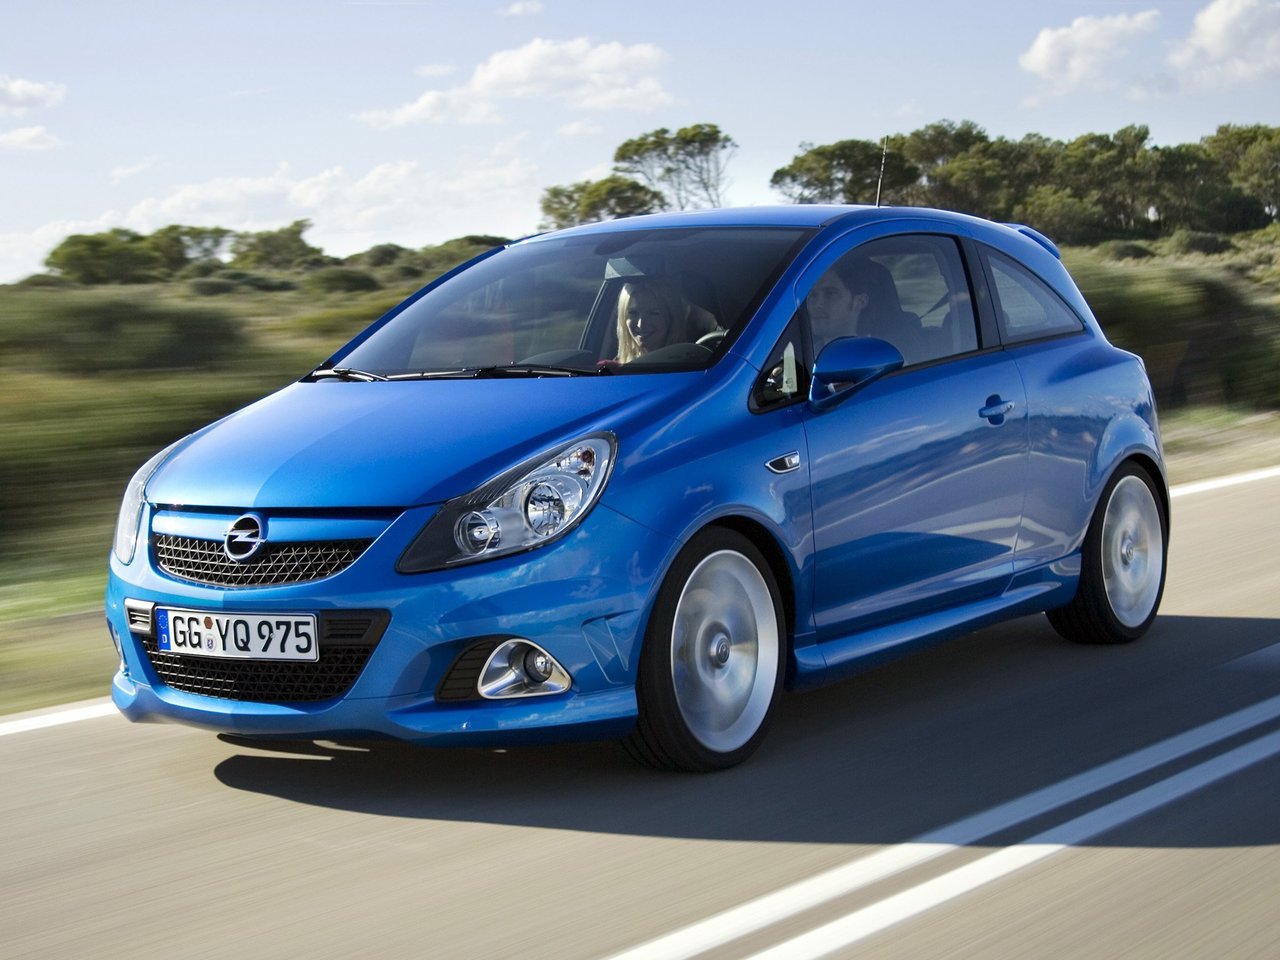 Расход газа одной комплектации хэтчбека три двери Opel Corsa OPC. Разница стоимости заправки газом и бензином. Автономный пробег до и после установки ГБО.